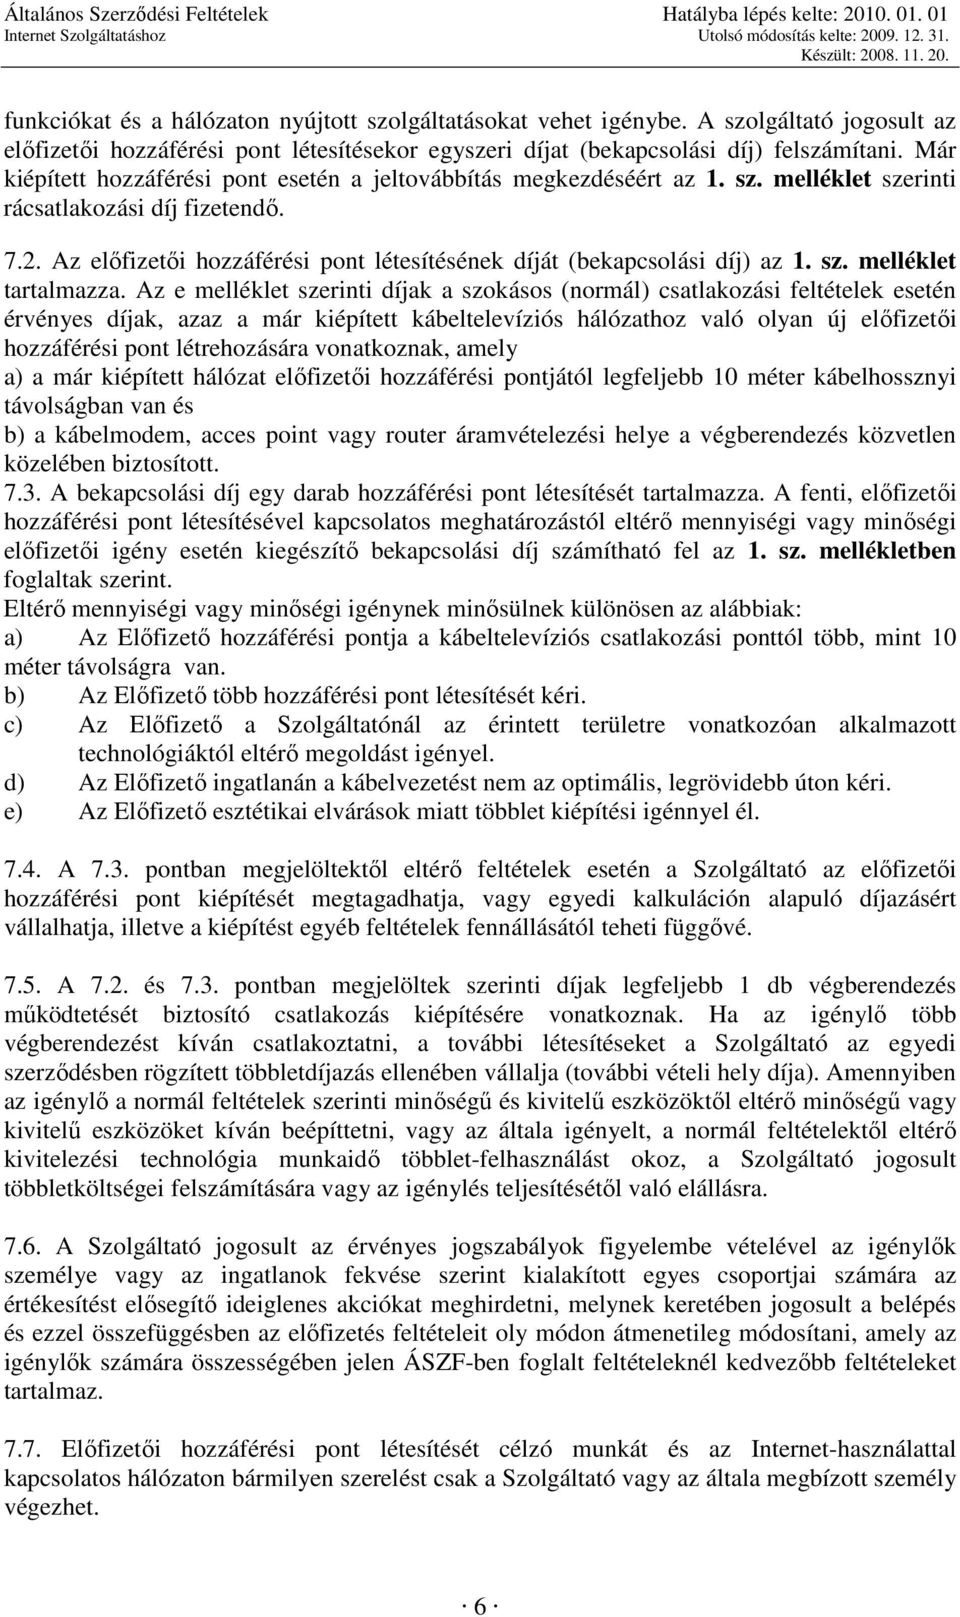 Az elıfizetıi hozzáférési pont létesítésének díját (bekapcsolási díj) az 1. sz. melléklet tartalmazza.